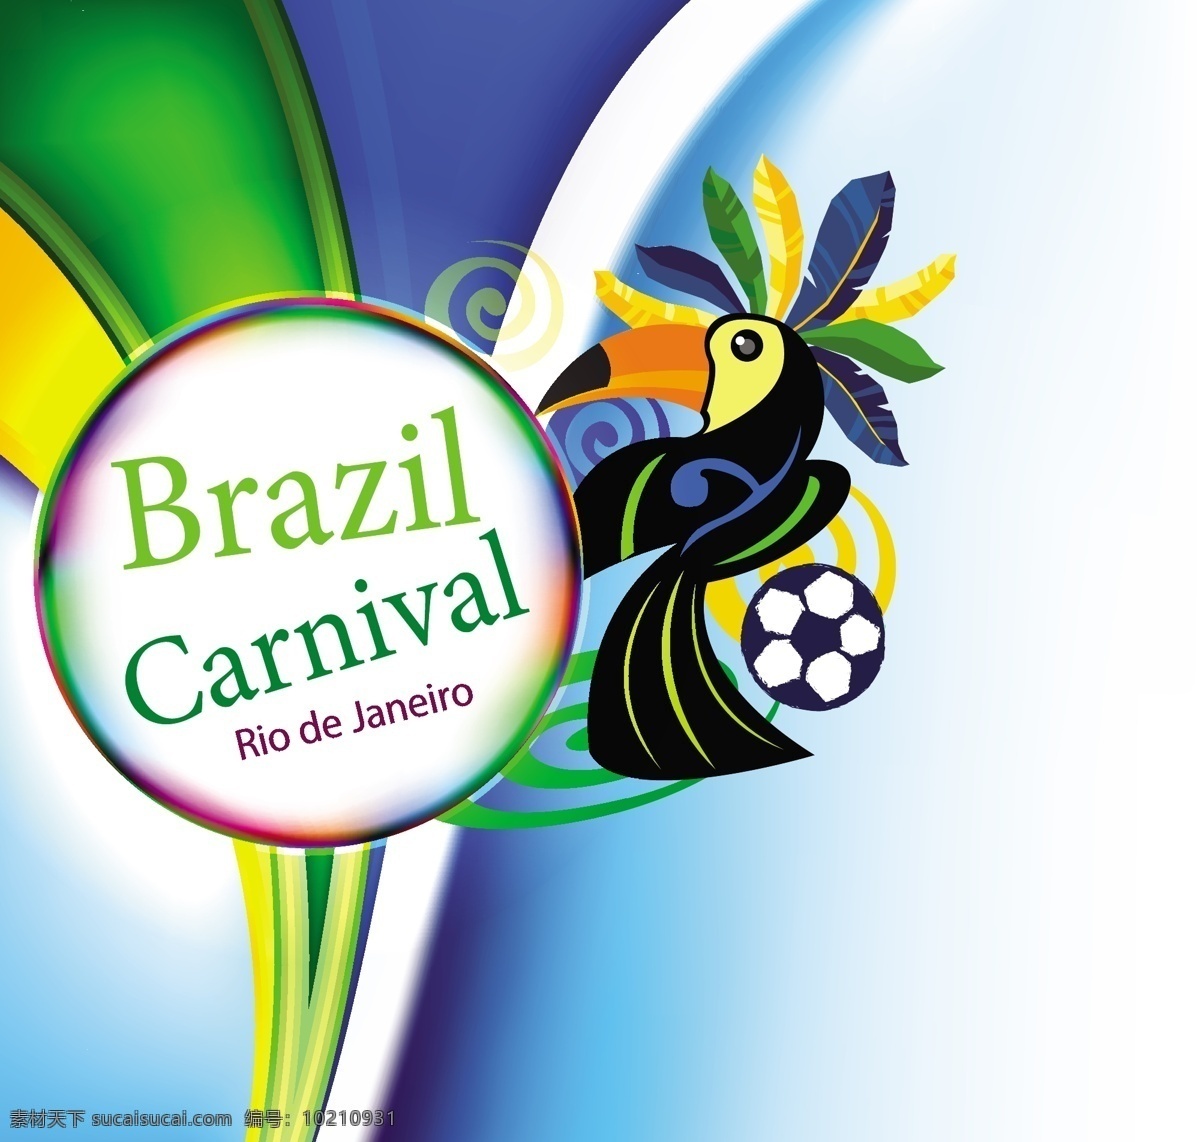 彩色背景素材 彩色背景 足球 巴西背景 矢量图